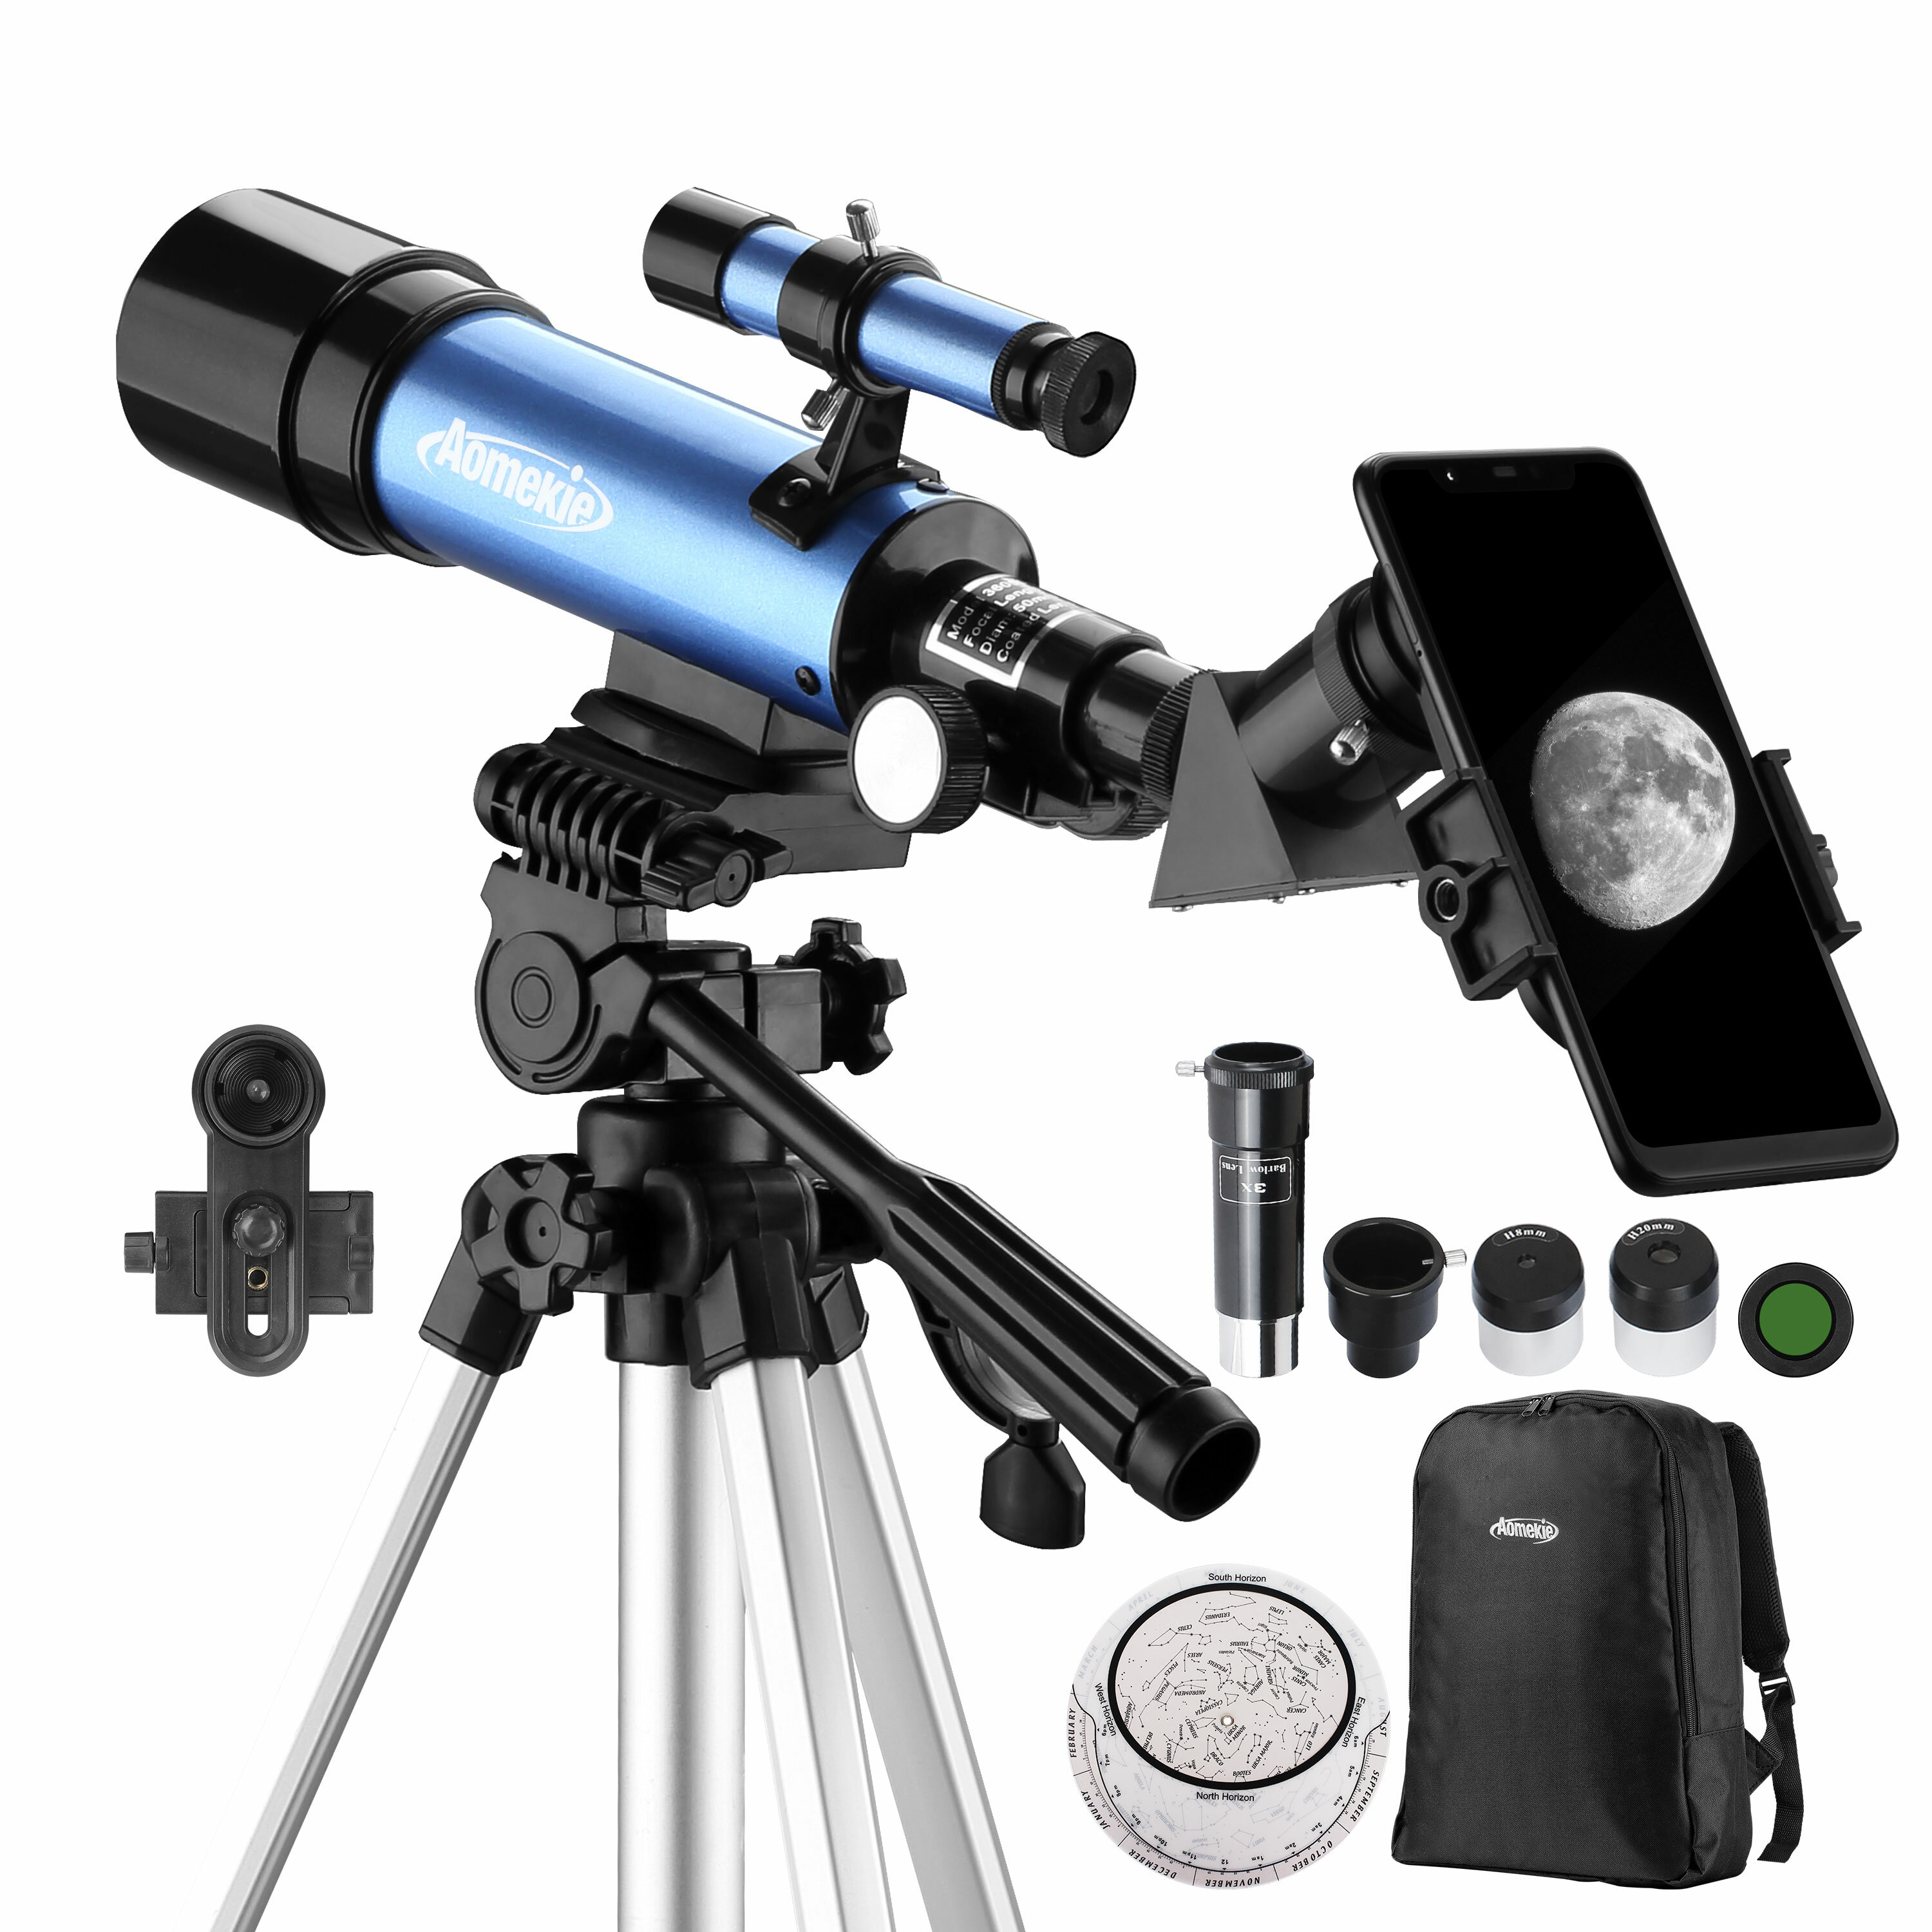 AOMEKIE 18X-135X Astronomisches Teleskop mit 50mm Öffnung, Refraktortyp, mit Telefonadapter und verstellbarem Stativ für Astronomie-Anfänger.